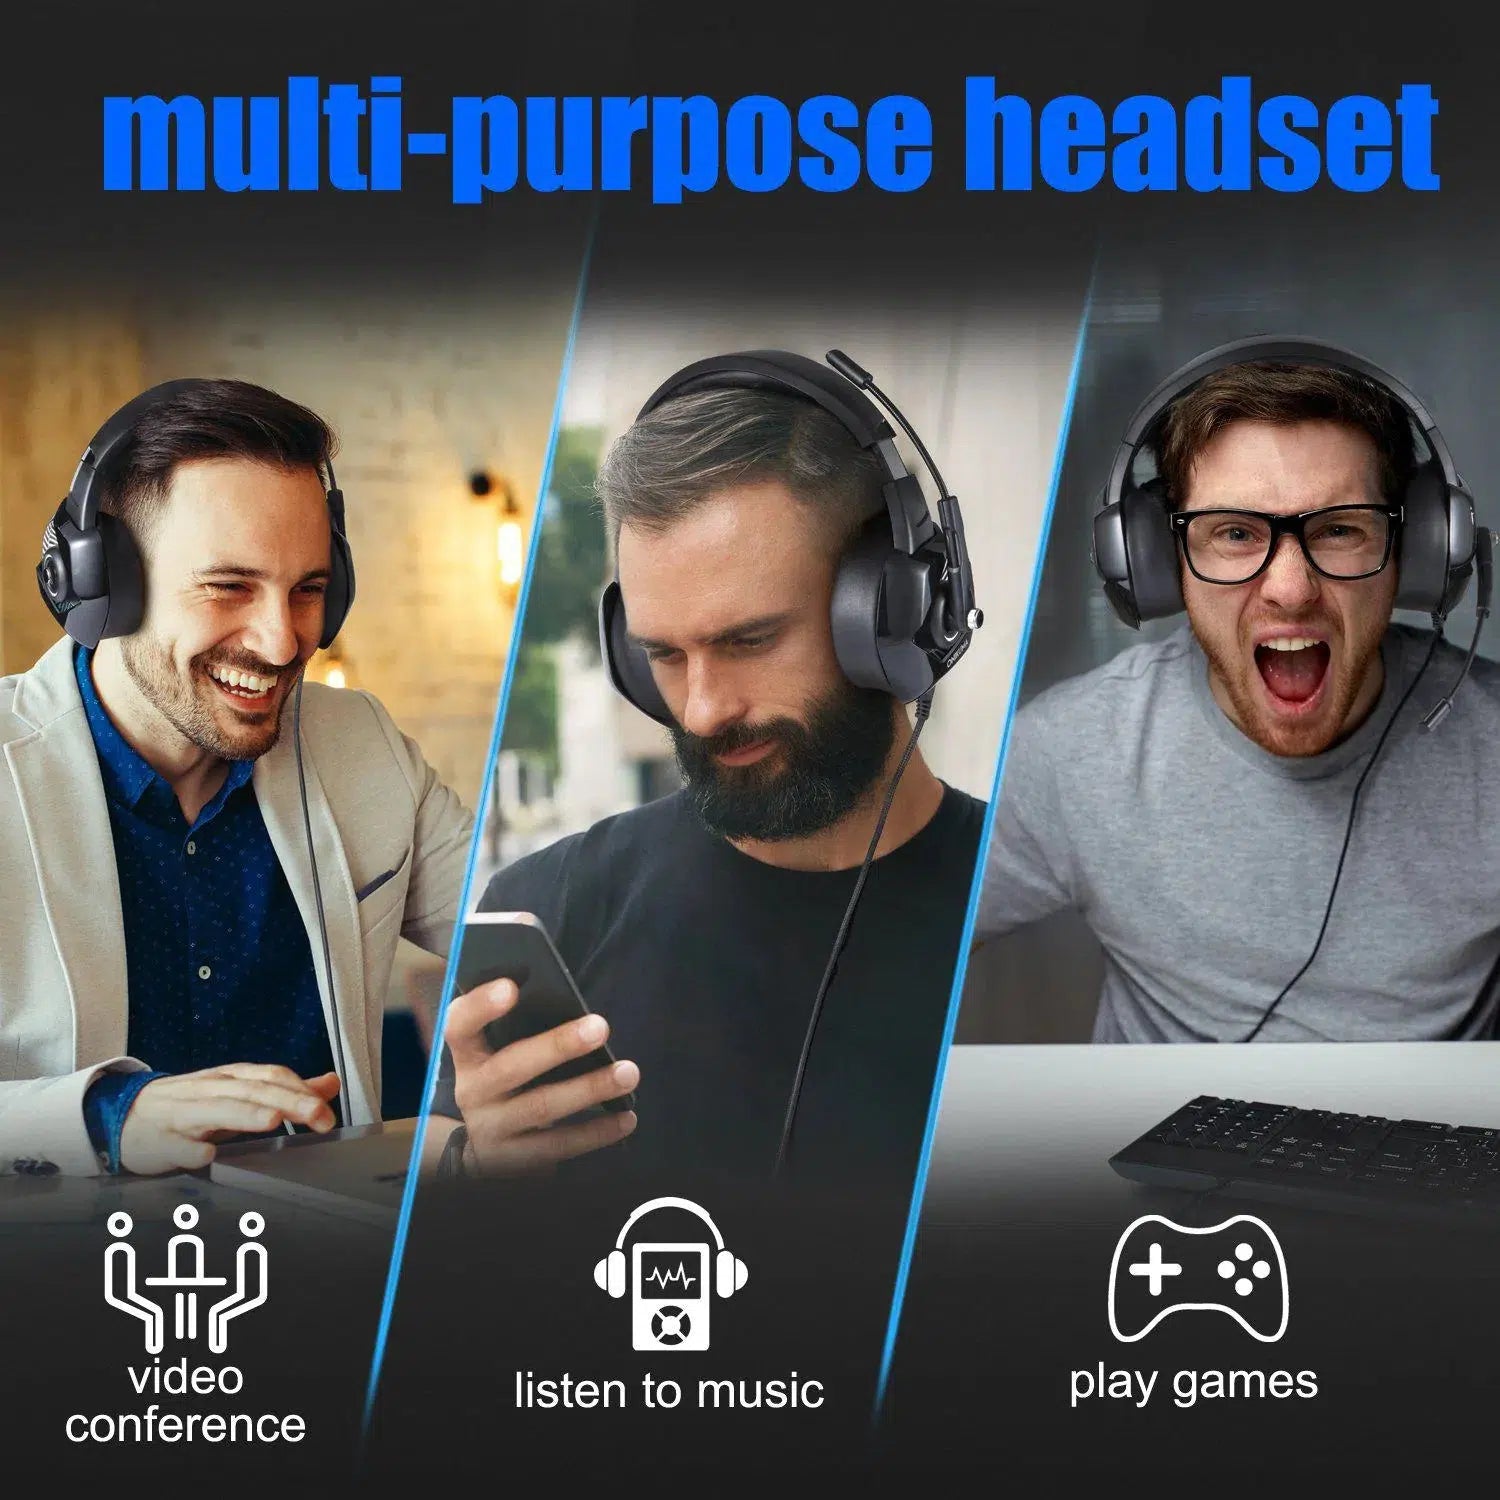 Mulit-purpose headset | ONIKUMA K6 wired Gaming Headphones